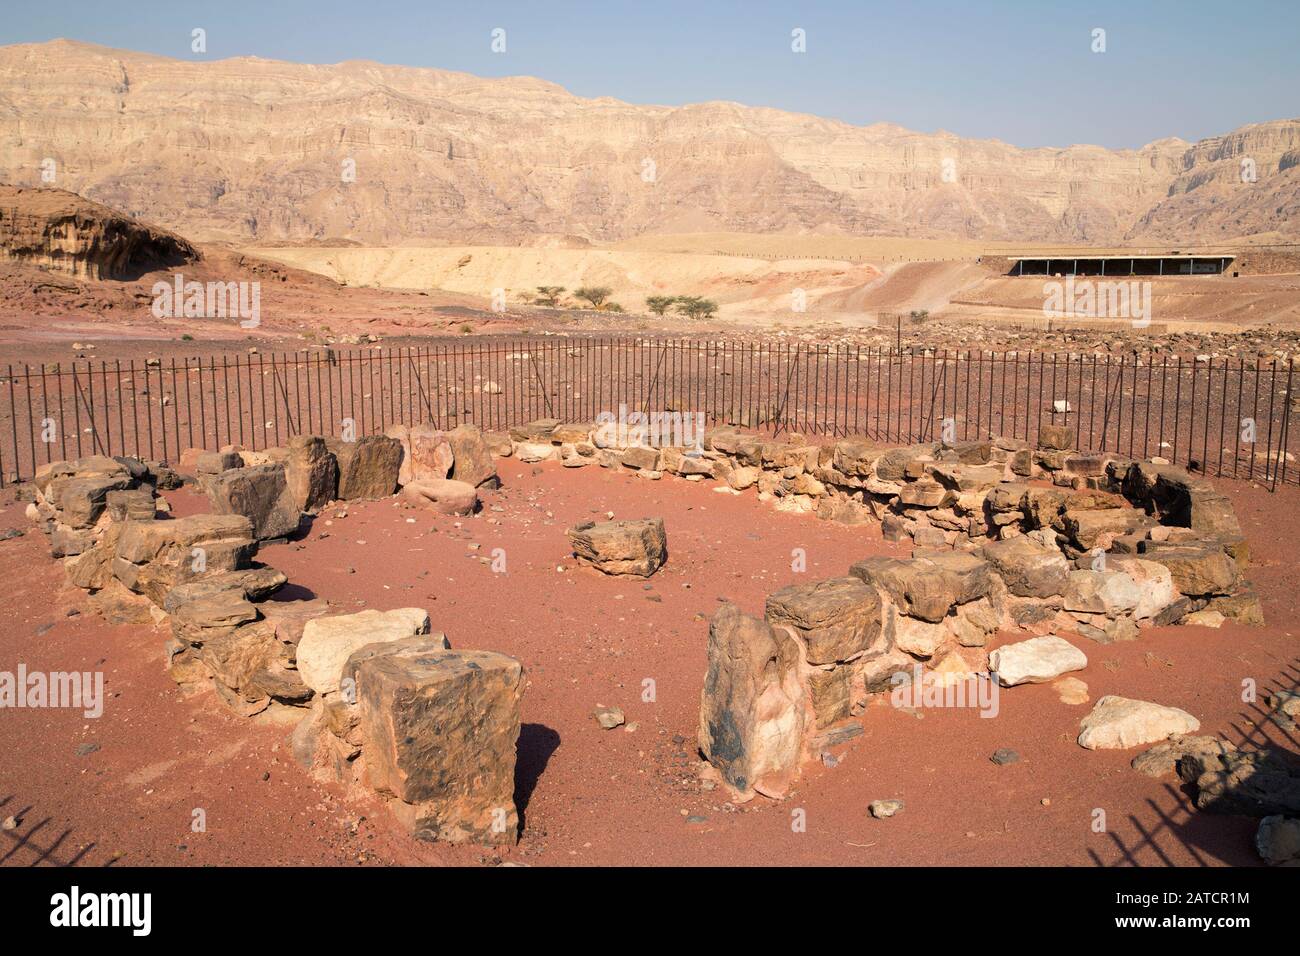 Schrein für Kupferschmelzlagerarbeiter in Timna während der ägyptischen Zeit vom 13. Bis 12. Jahrhundert v. u. z. Tisch in der Mitte, rituelles Becken im Rücken Stockfoto